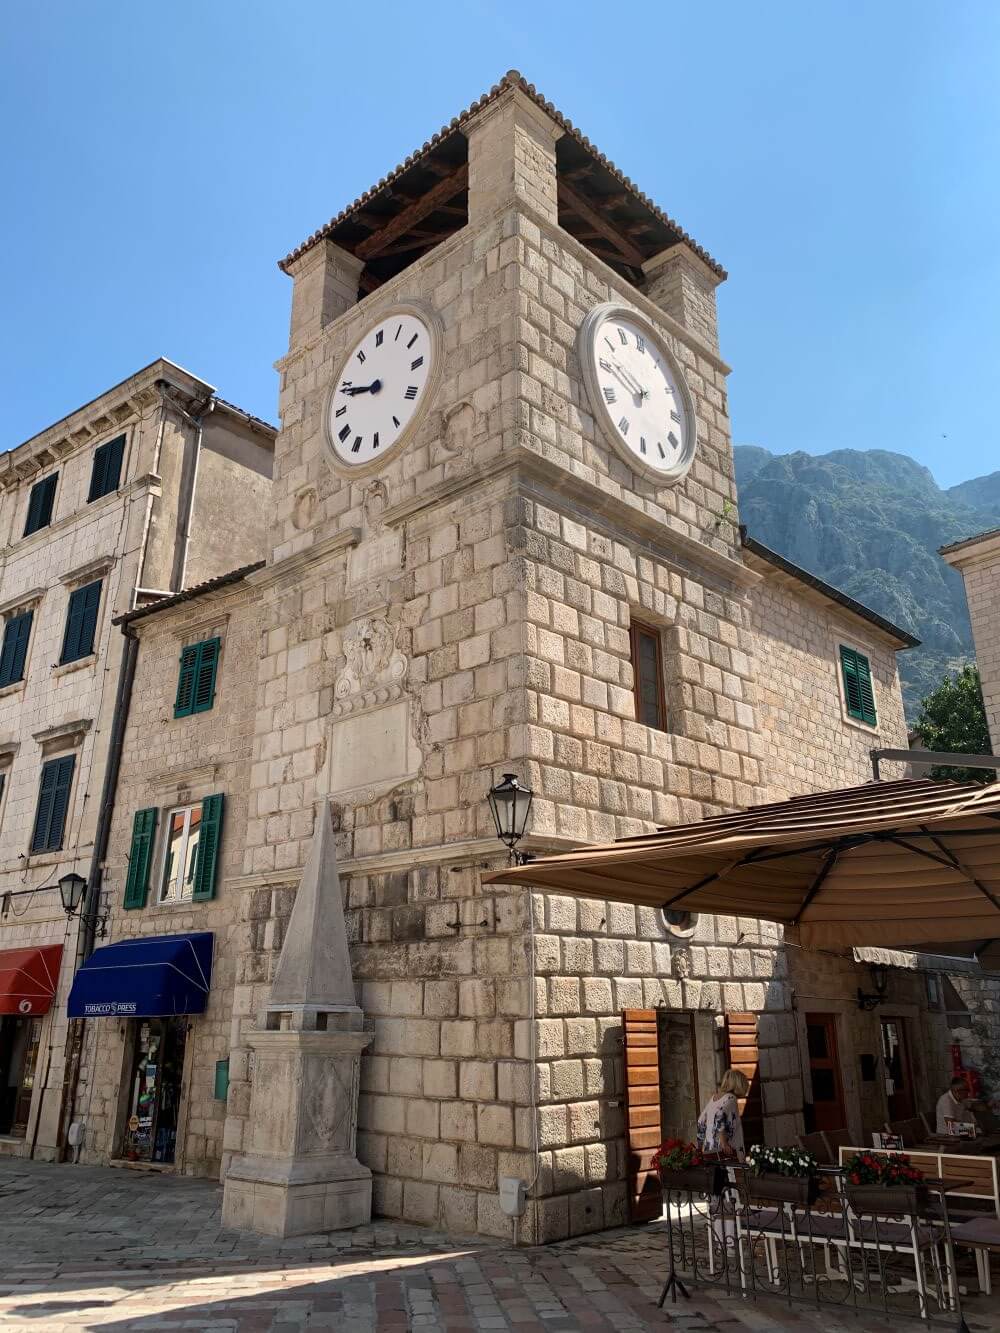 Kotor clocktower